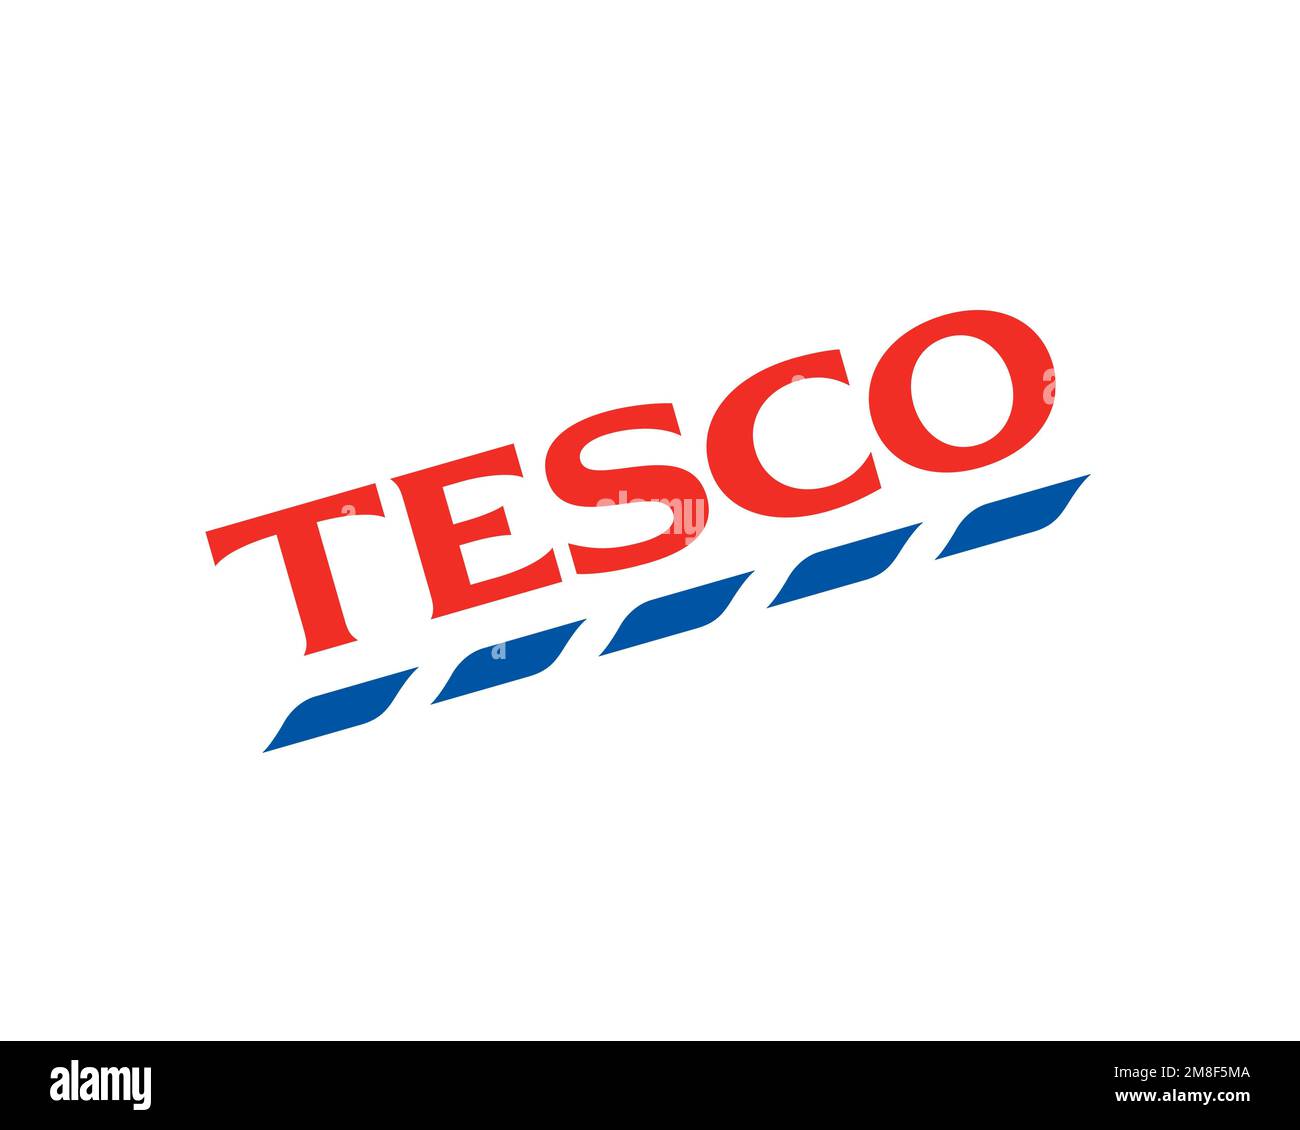 Tesco, rotated logo, white background Stock Photo